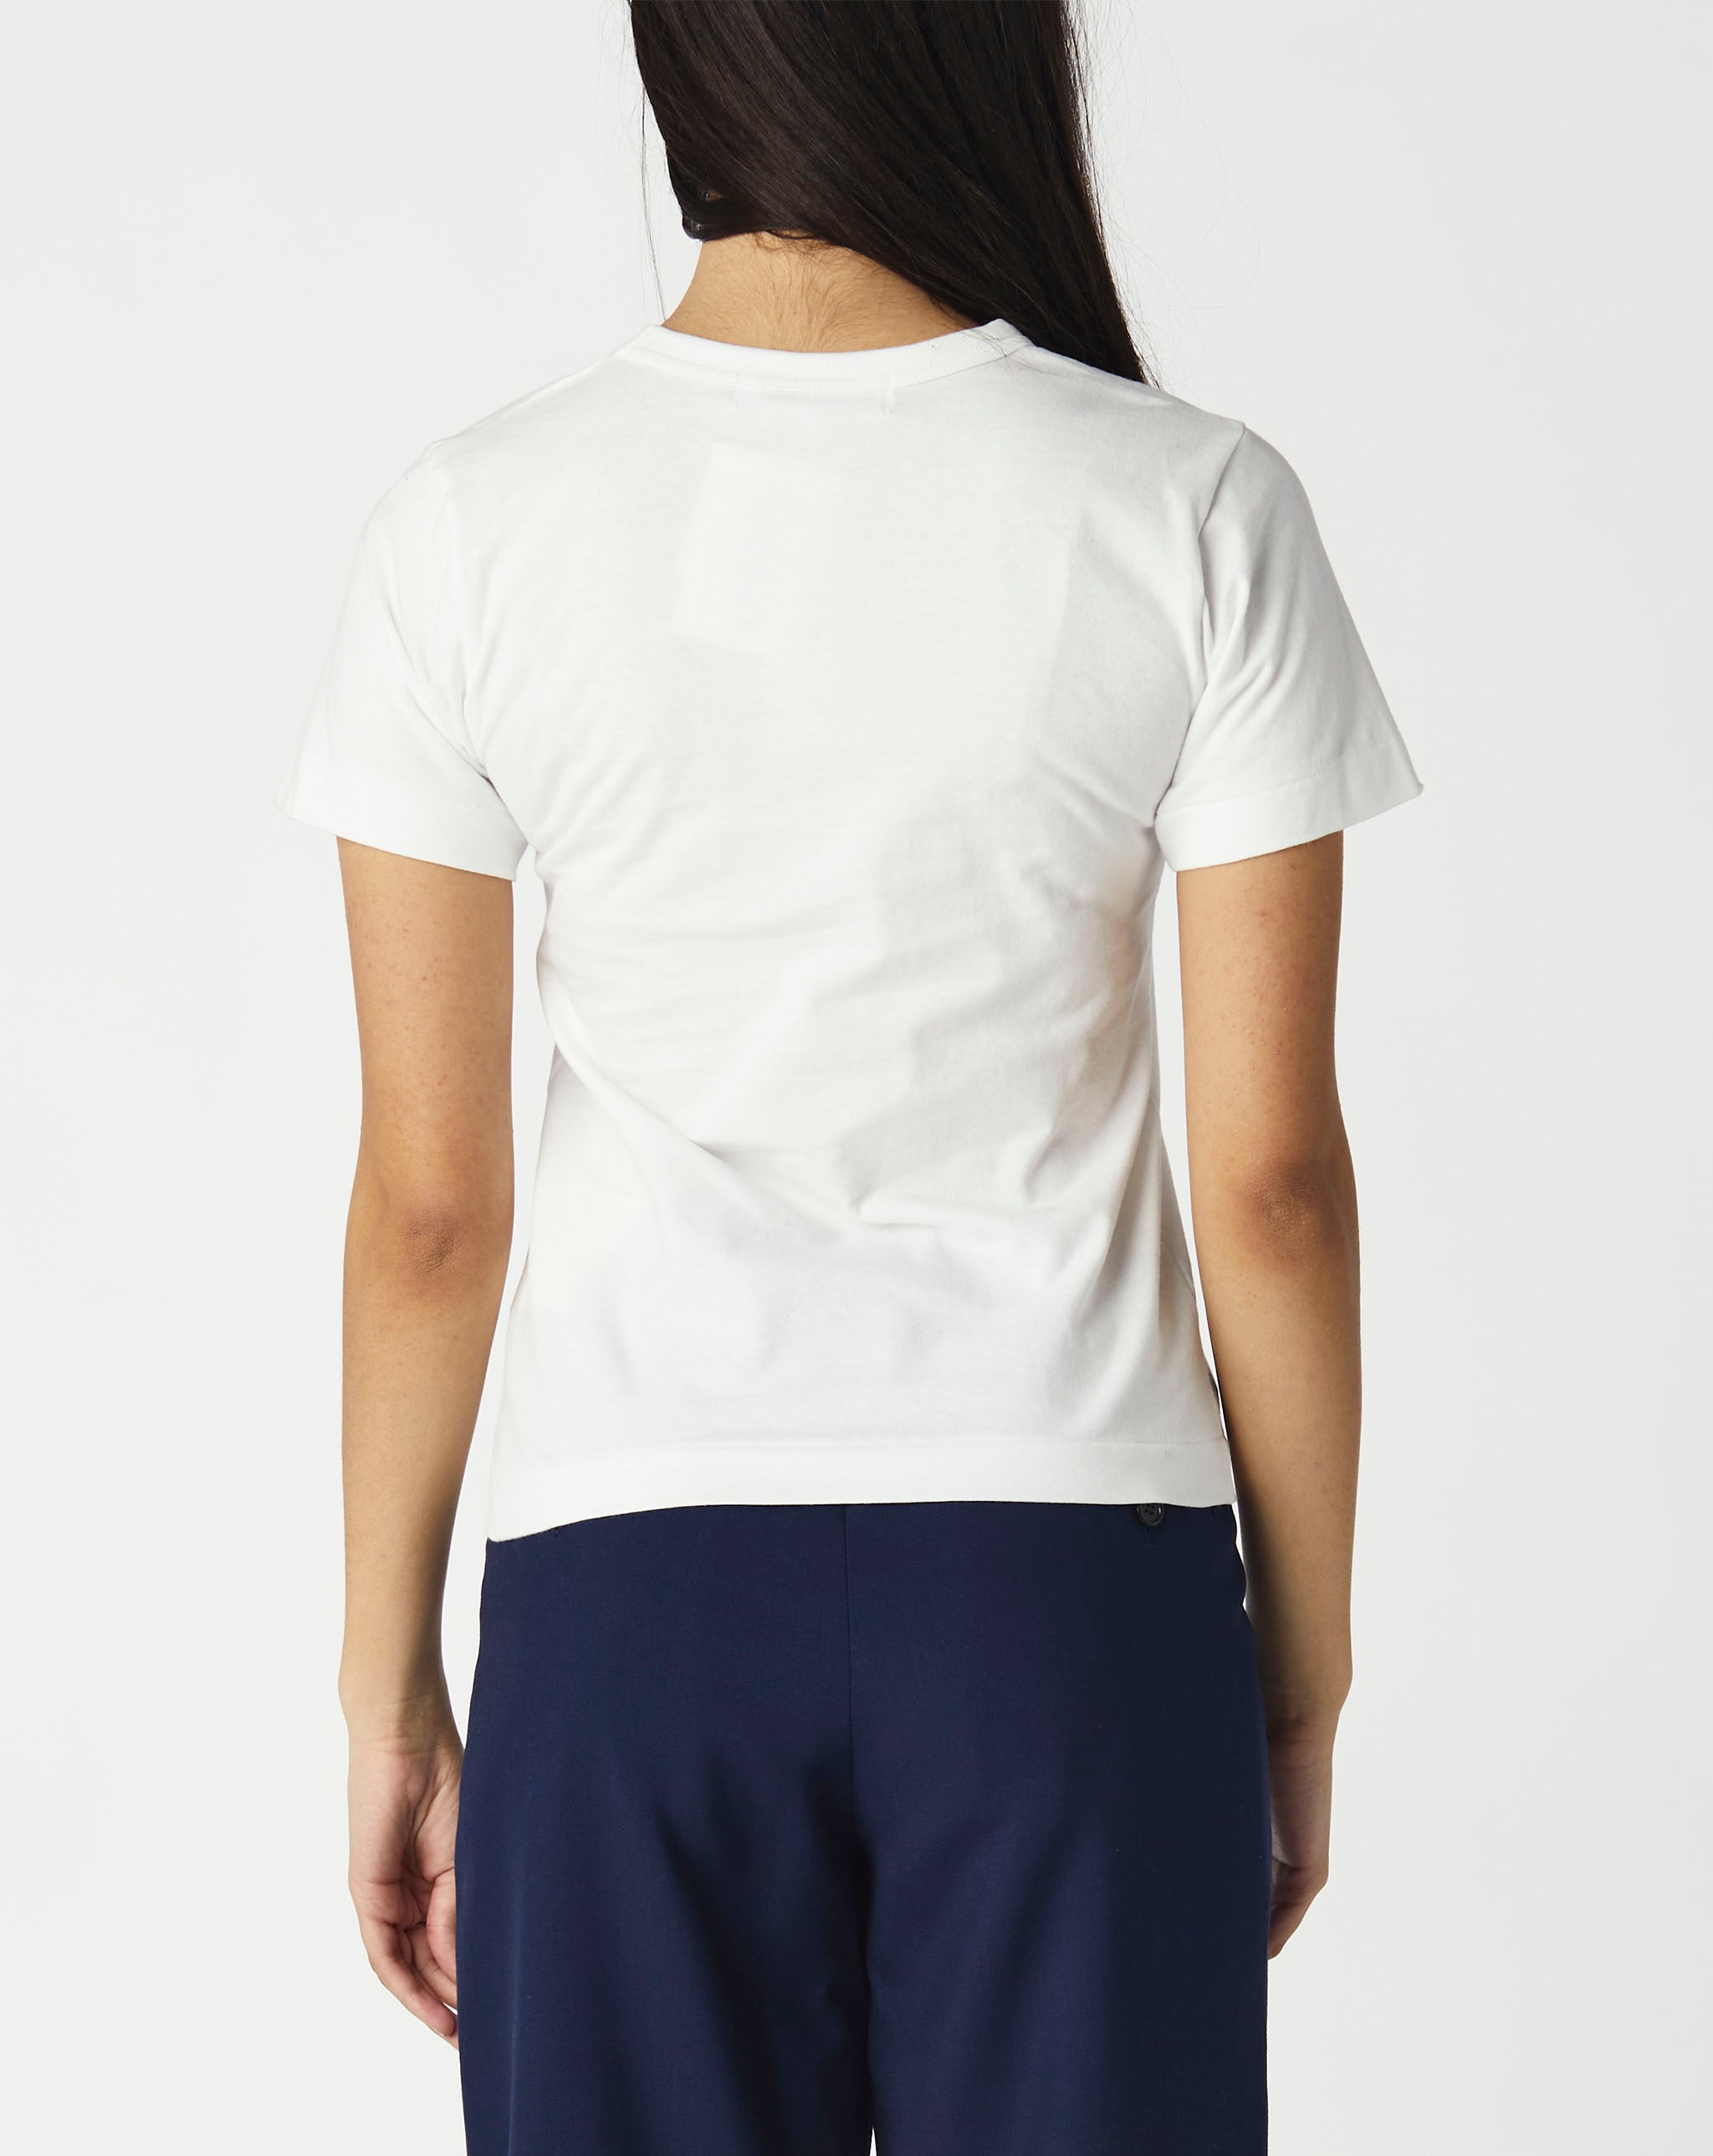 zara knitwear jacket 18 to 24 months Women's Play Polka Dot T-Shirt  - Cheap Urlfreeze Jordan outlet